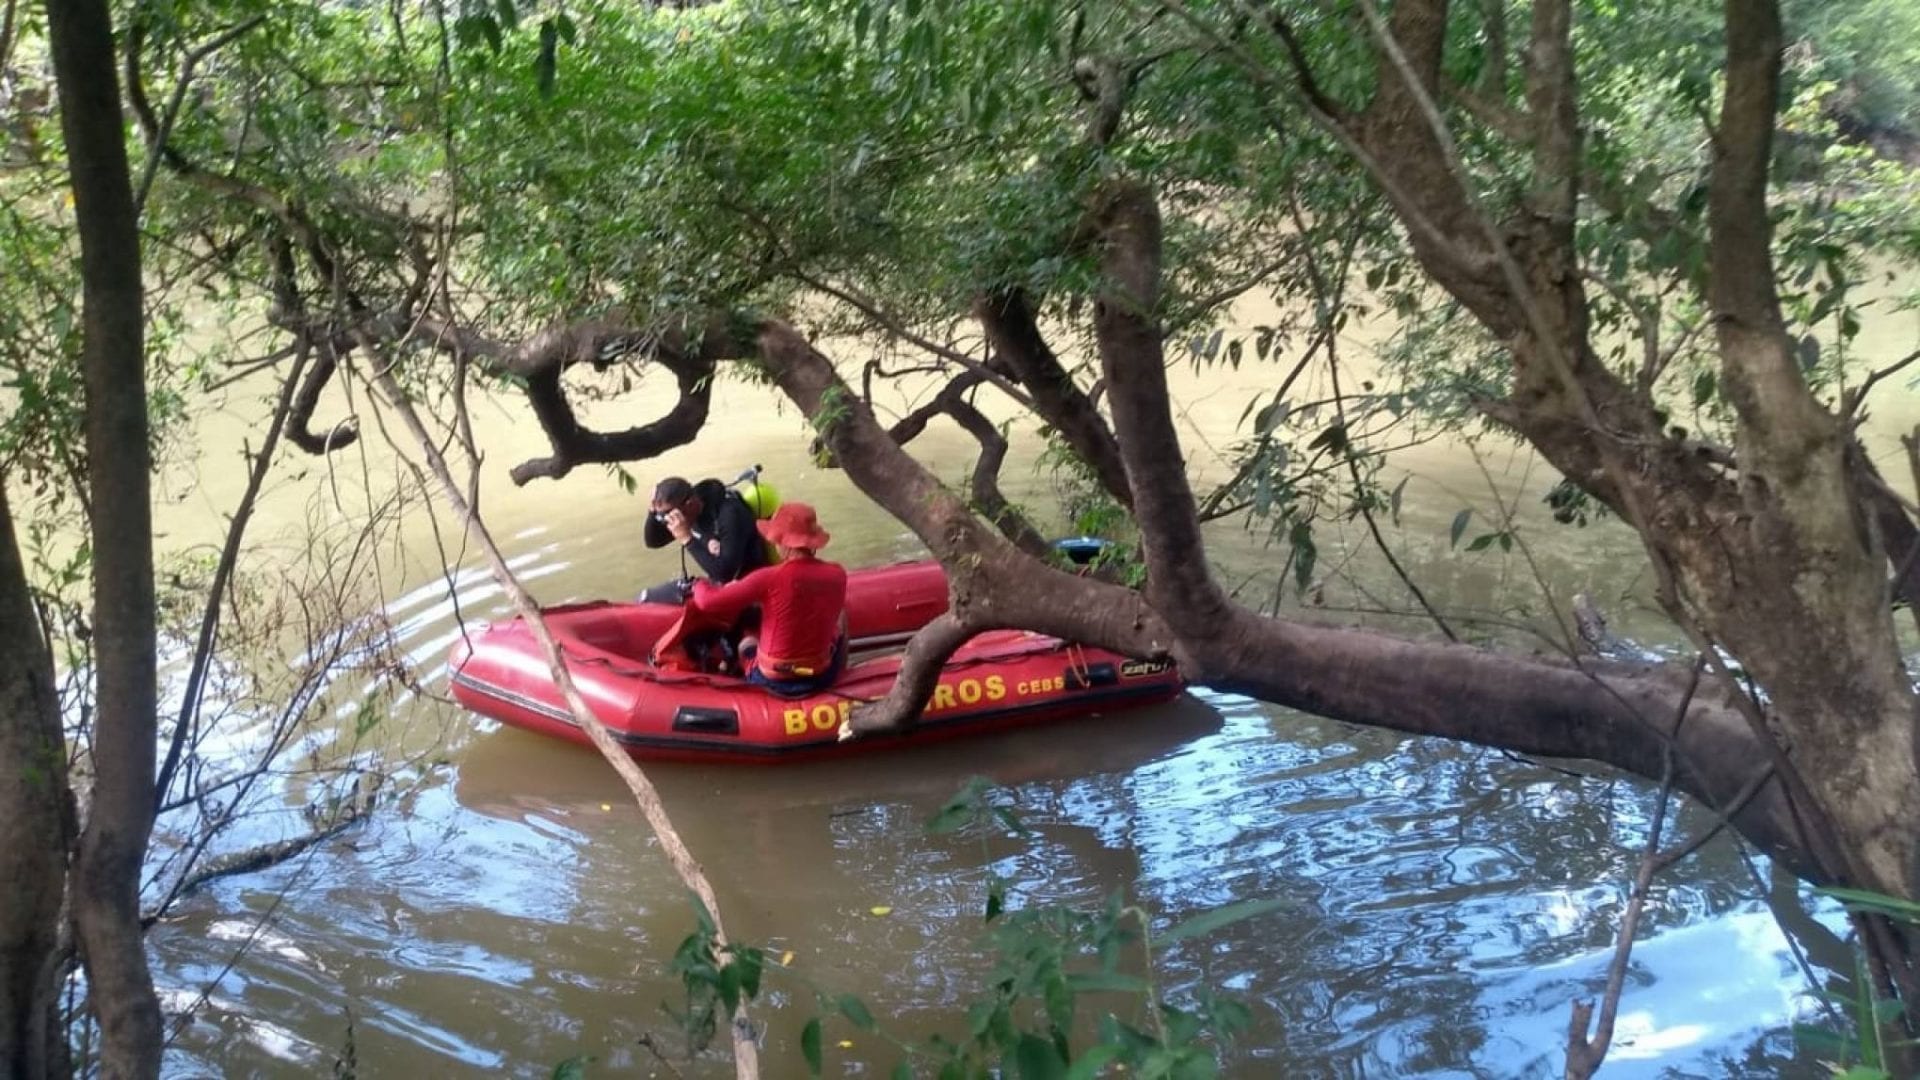 Bombeiros realizam buscas no Rio Gravataí após homem desaparecer enquanto tomava banho